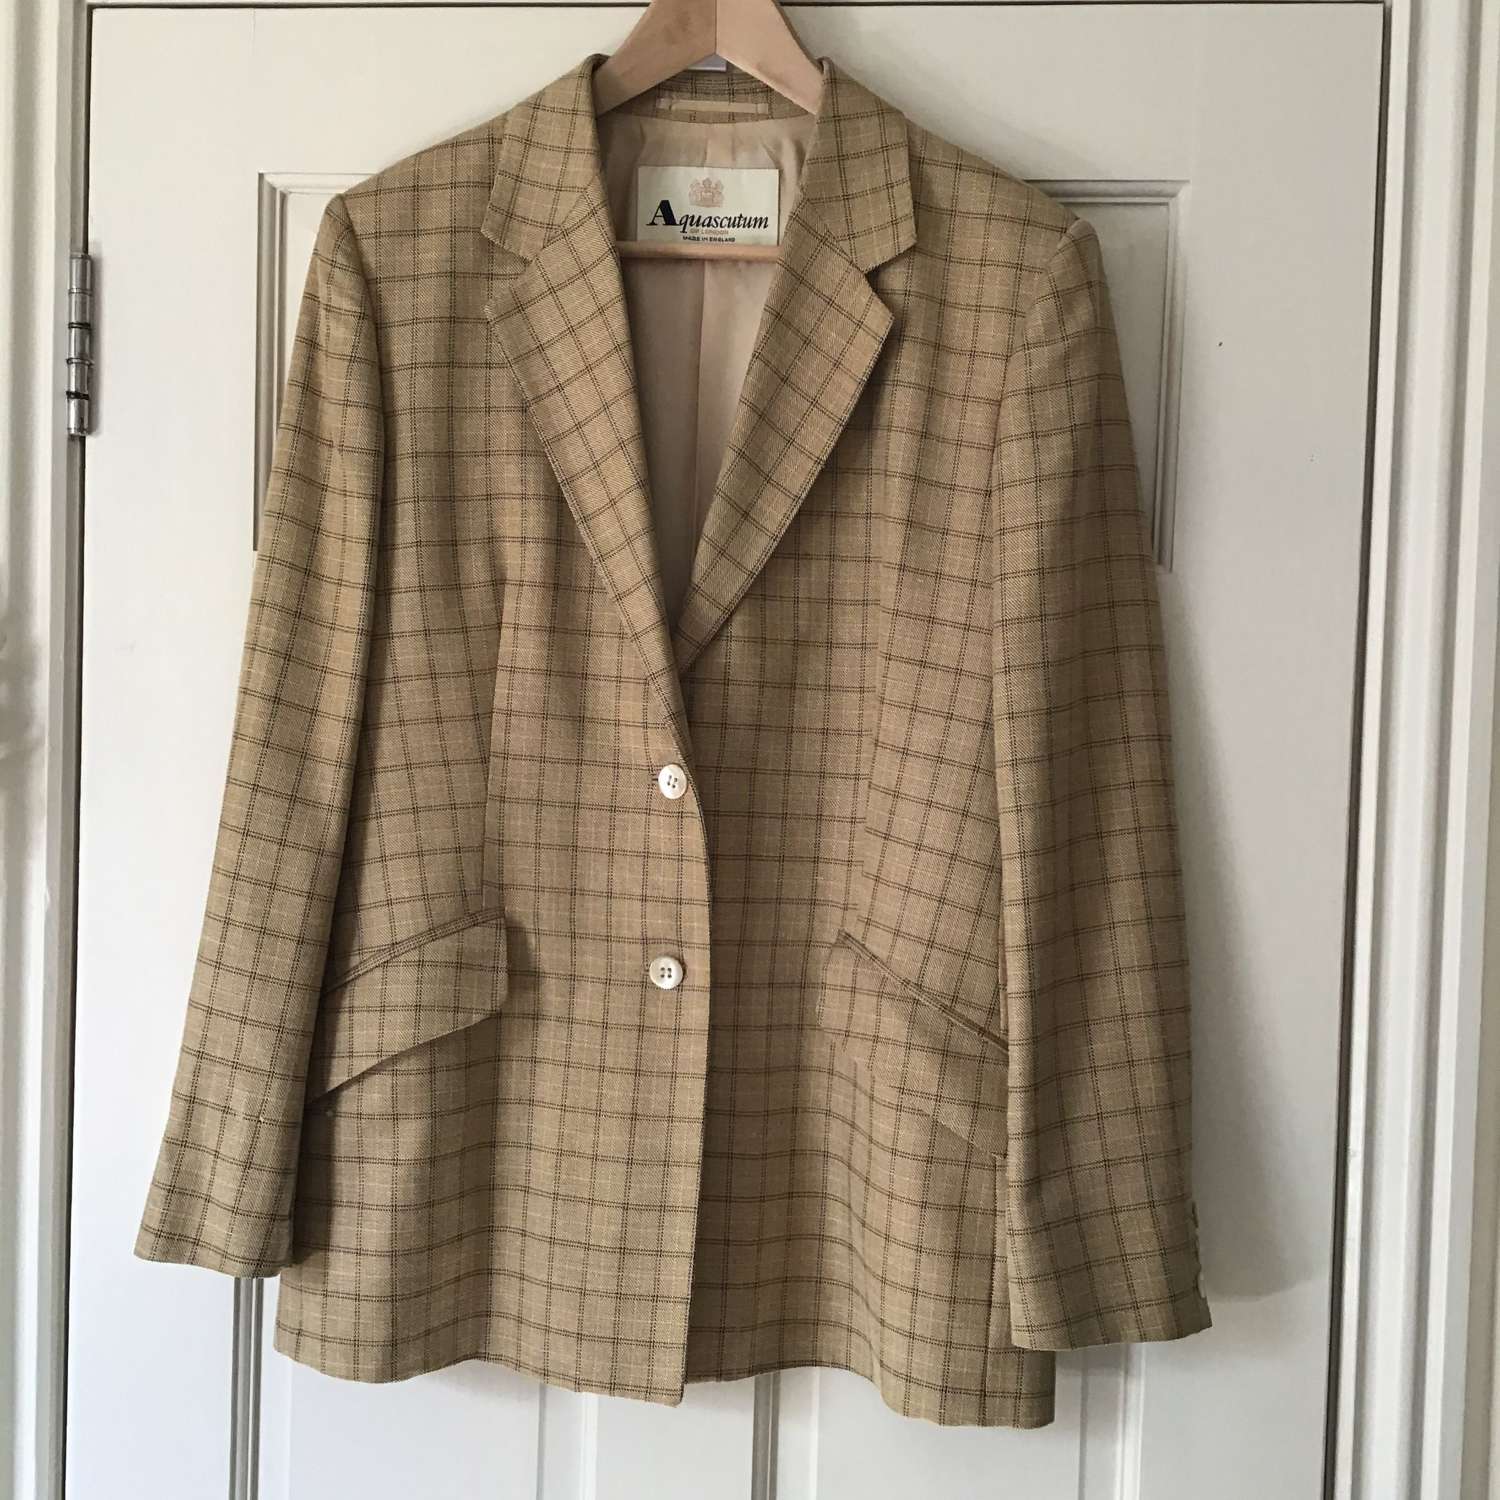 Vintage Aquascutum jacket UK size 14